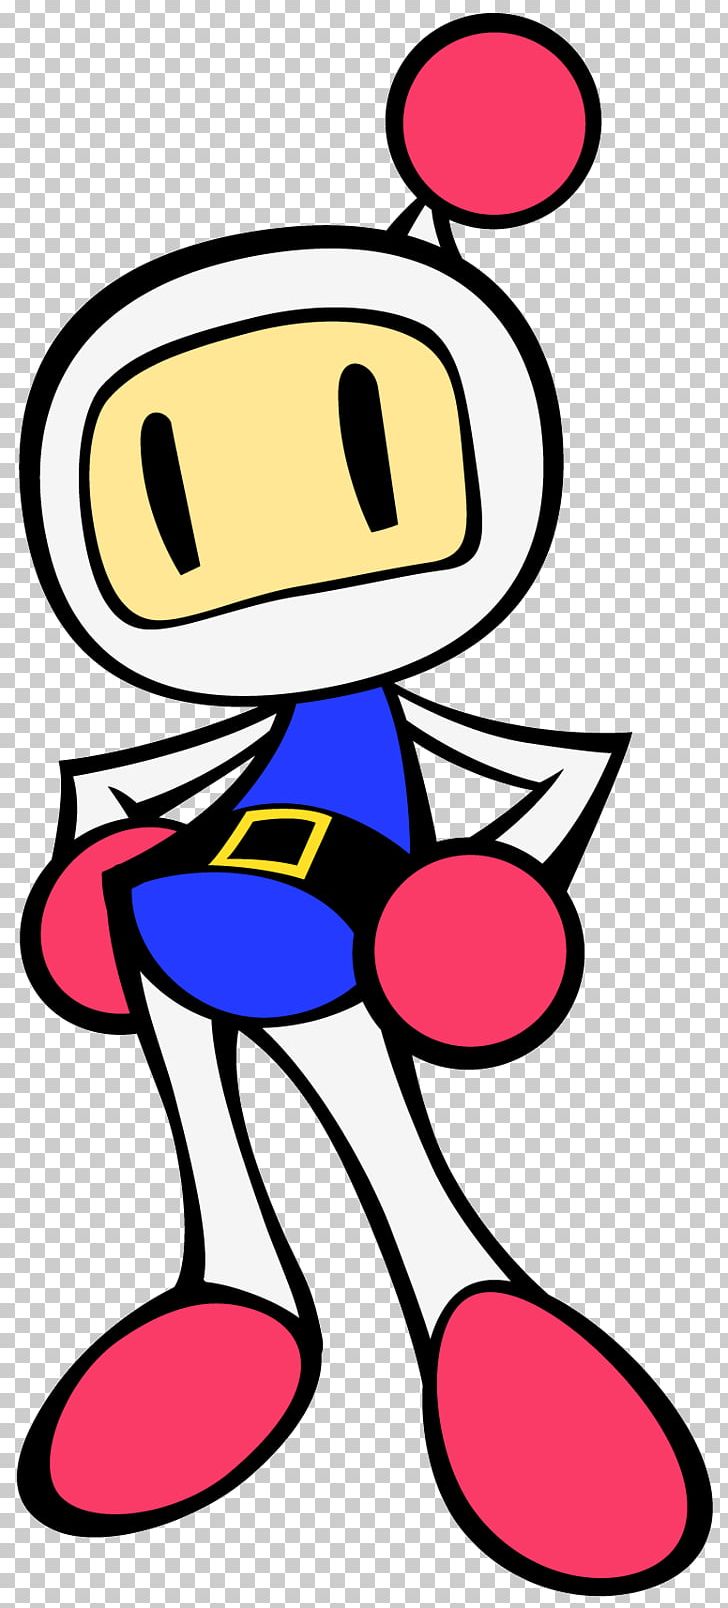 Super Bomberman R Bomberman Hero Video Game PNG, Clipart, Area, Artwork, Black Man, Bomberman, Bomberman Hero Free PNG Download